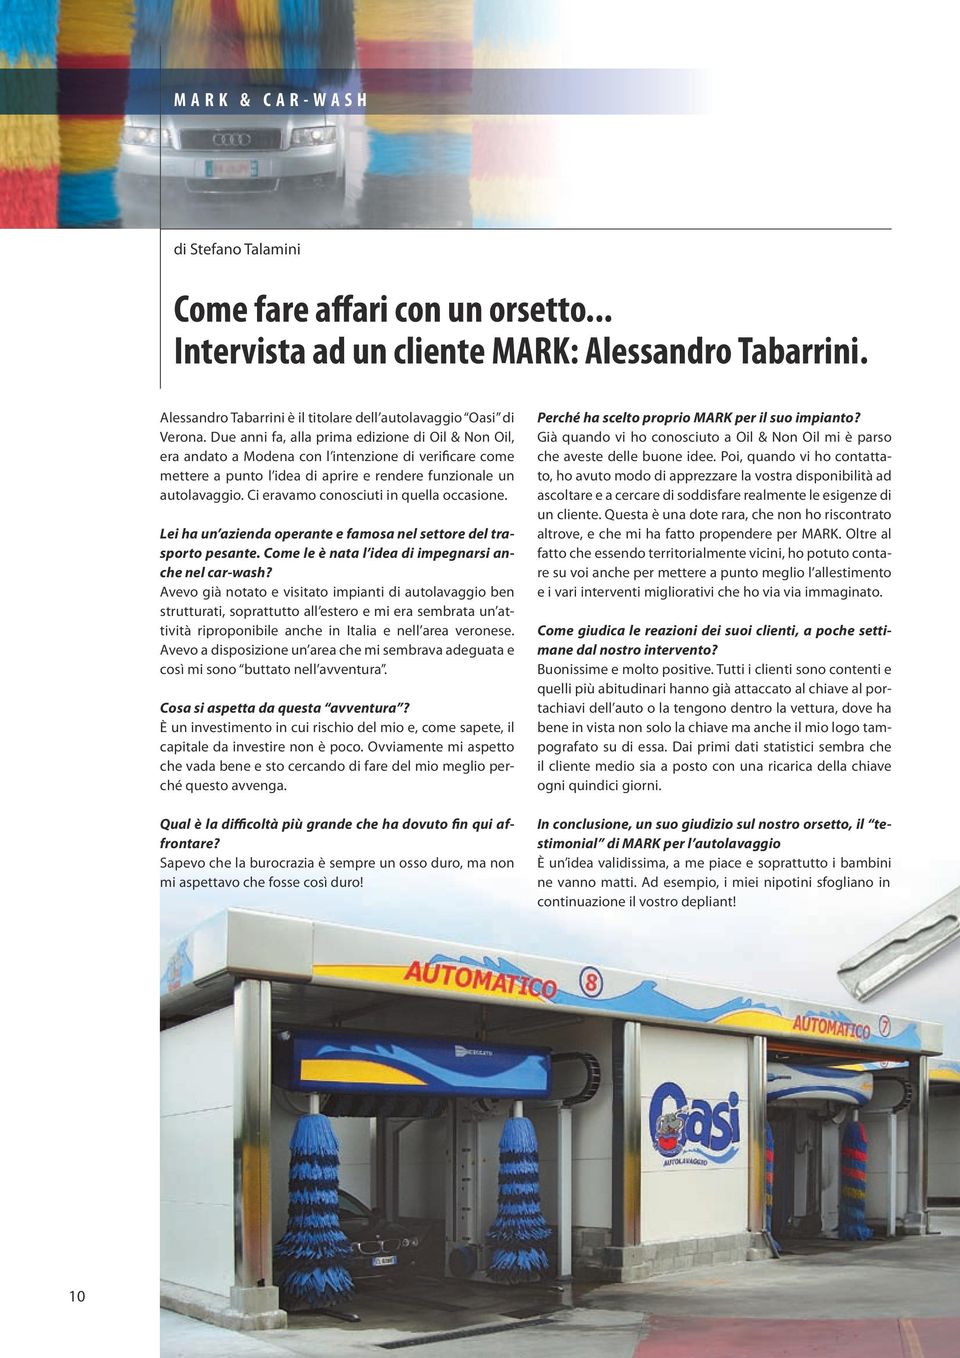 Due anni fa, alla prima edizione di Oil & Non Oil, era andato a Modena con l intenzione di verificare come mettere a punto l idea di aprire e rendere funzionale un autolavaggio.